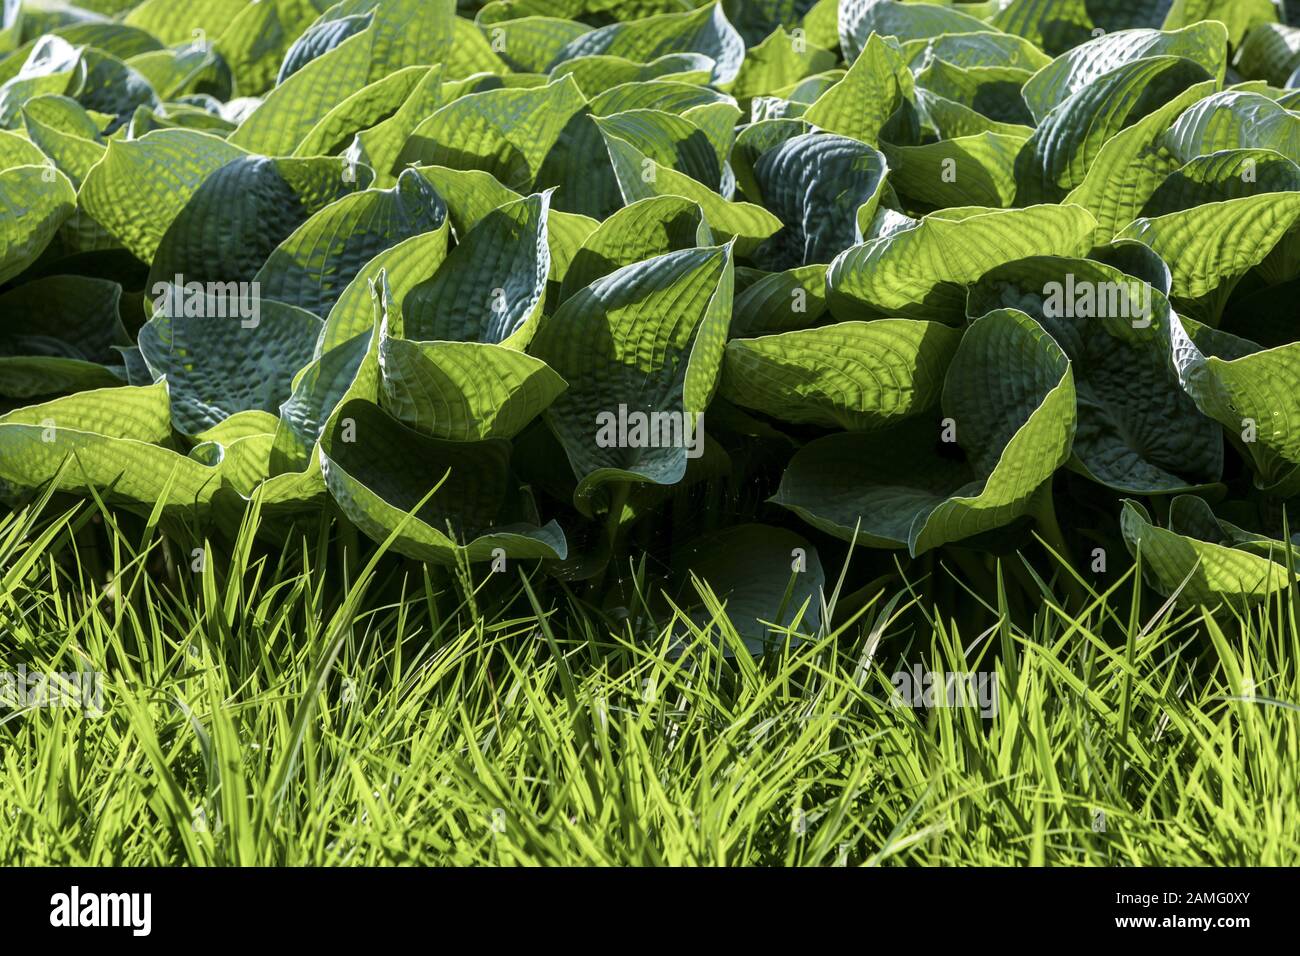 Hosta grass border sunlit leaves edge Stock Photo